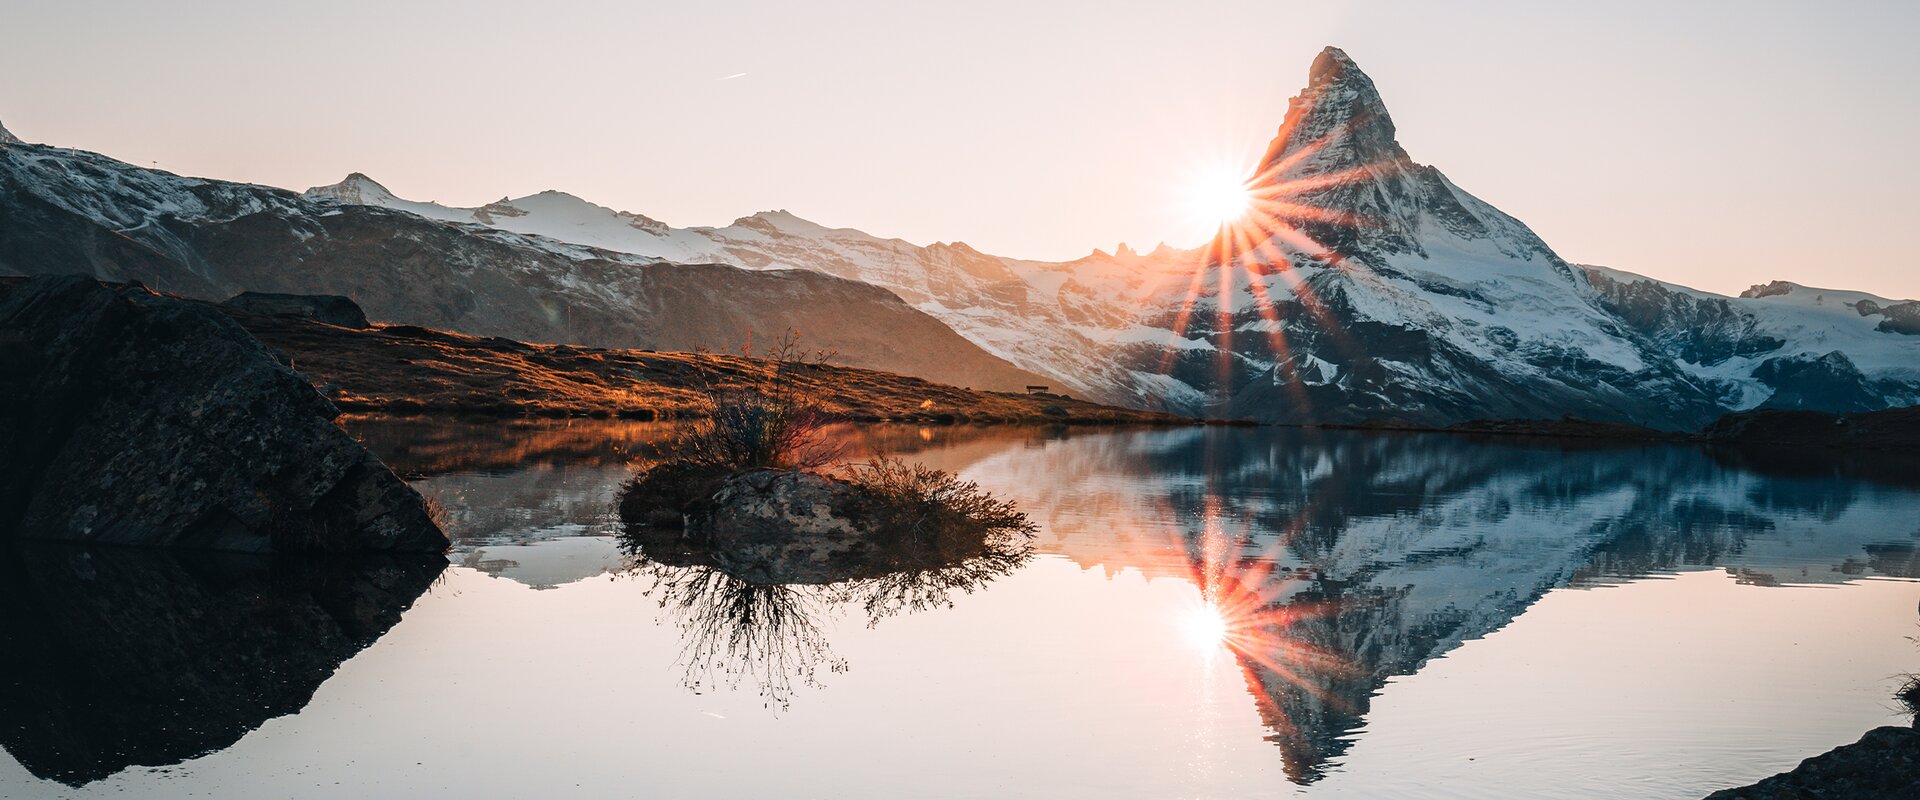 Dans une ambiance automnale, le Cervin se reflète dans le Stellisee au coucher de soleil.  | © Gabriel Perren